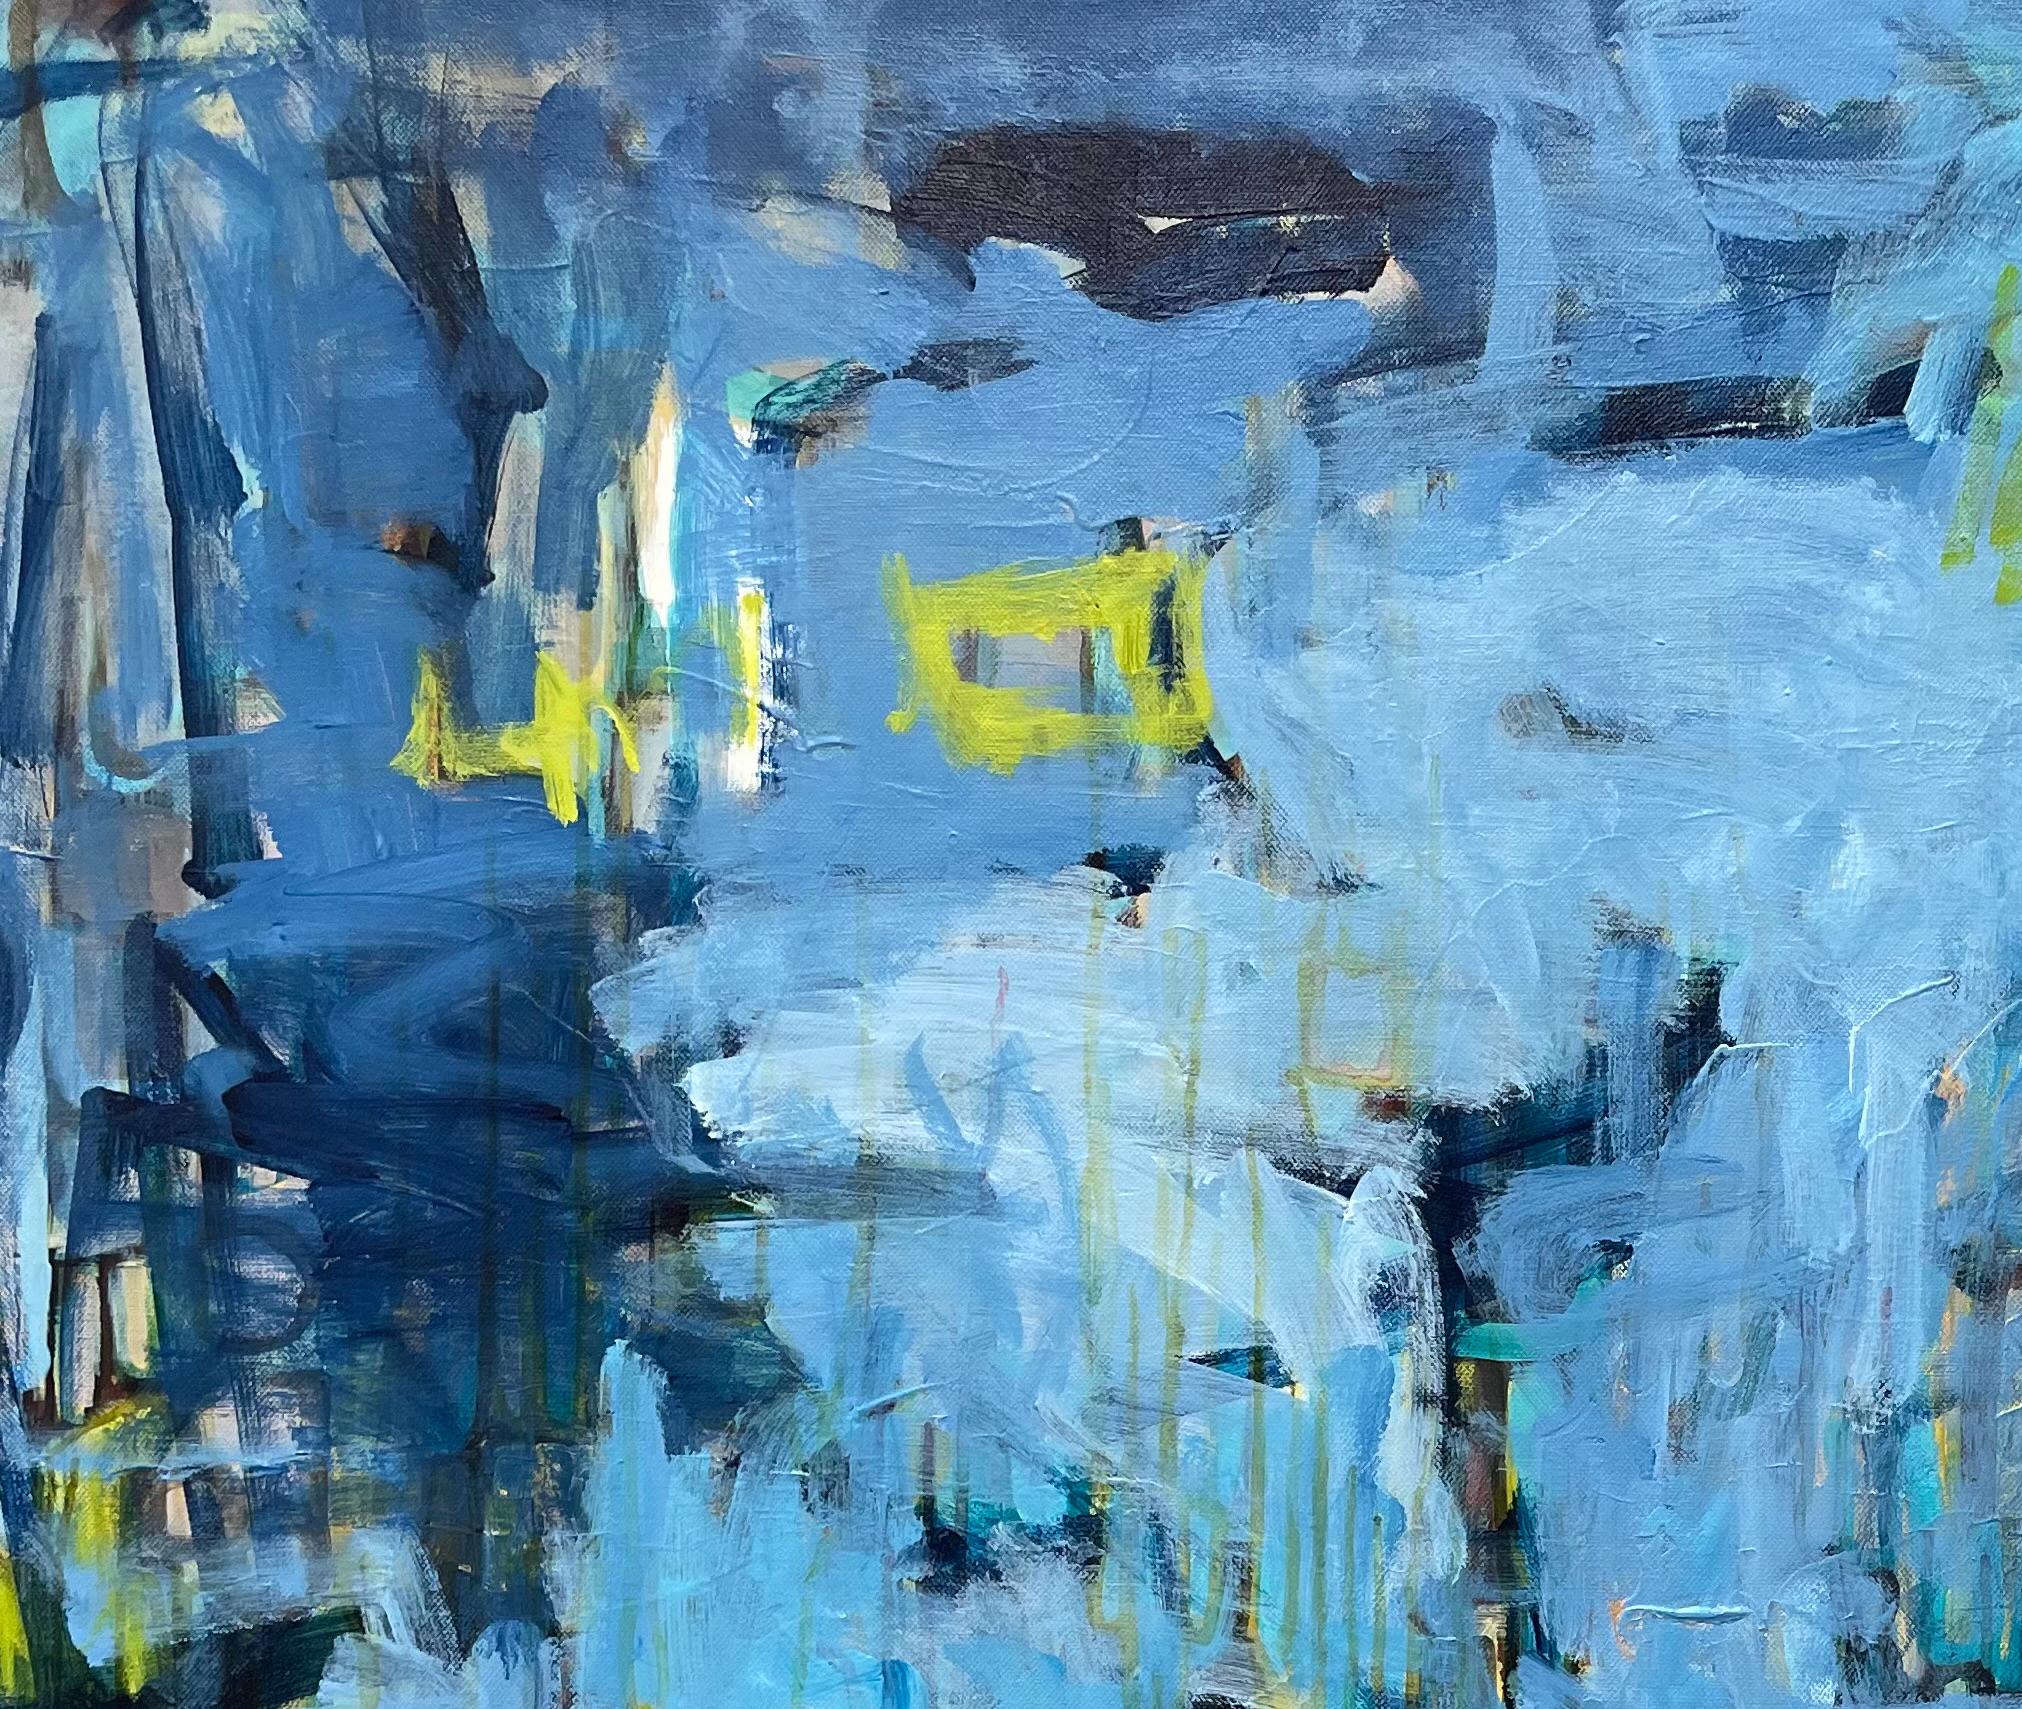 Pond at Dusk ist ein zeitgenössisches abstraktes  Gemälde der texanischen Künstlerin Eleanor McCarthy.  Man kann es auch als abstrakte Landschaftsmalerei bezeichnen. Eleanor McCarthy verwendet Acrylfarben auf Leinwand, um die beruhigenden Farben